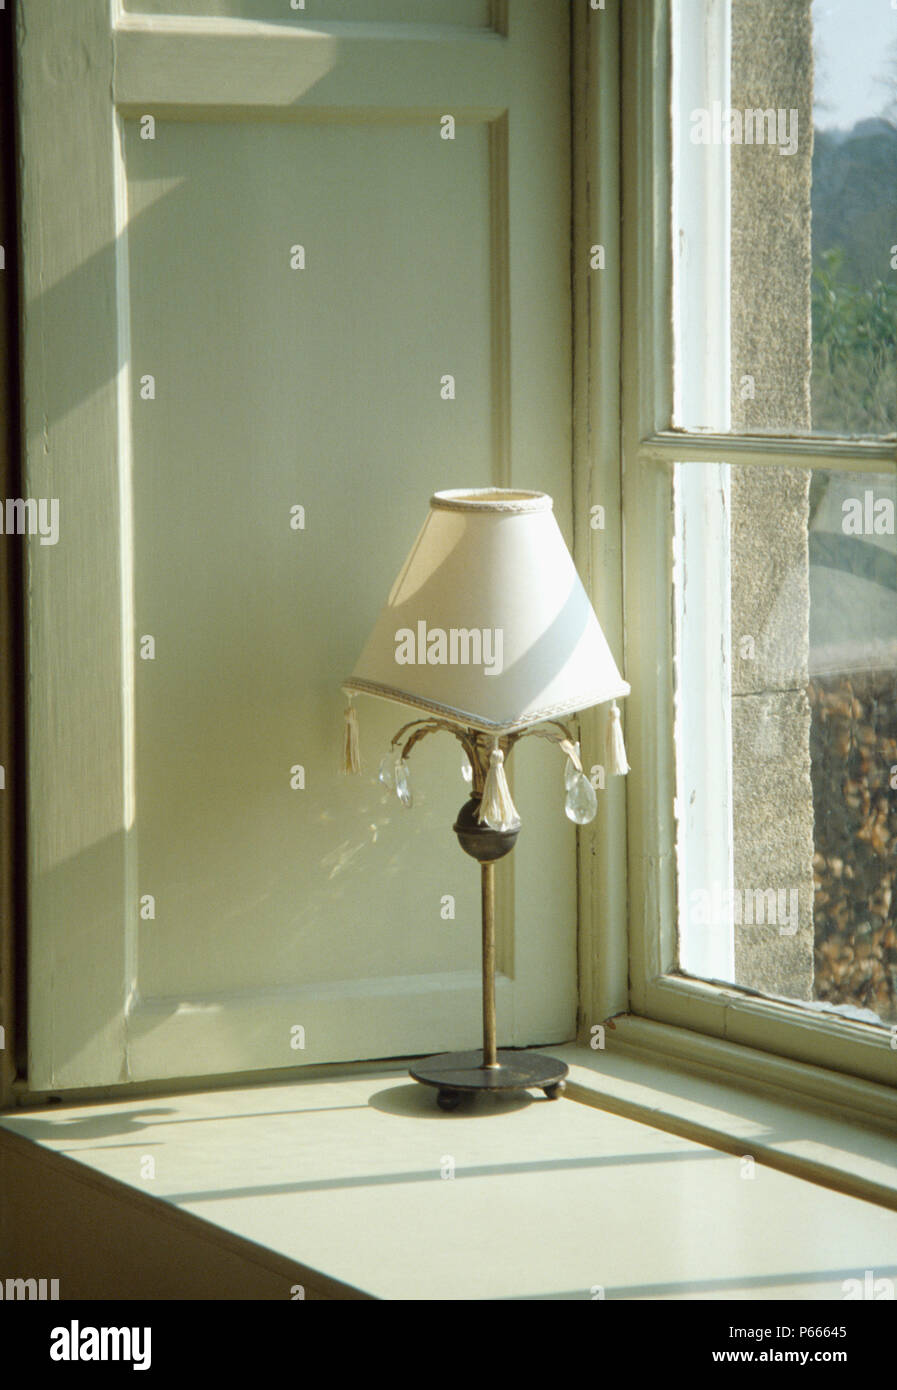 Close-up de lámpara de metal con sombra blanca adornada con cristales de vidrio sobre la repisa de la ventana Foto de stock